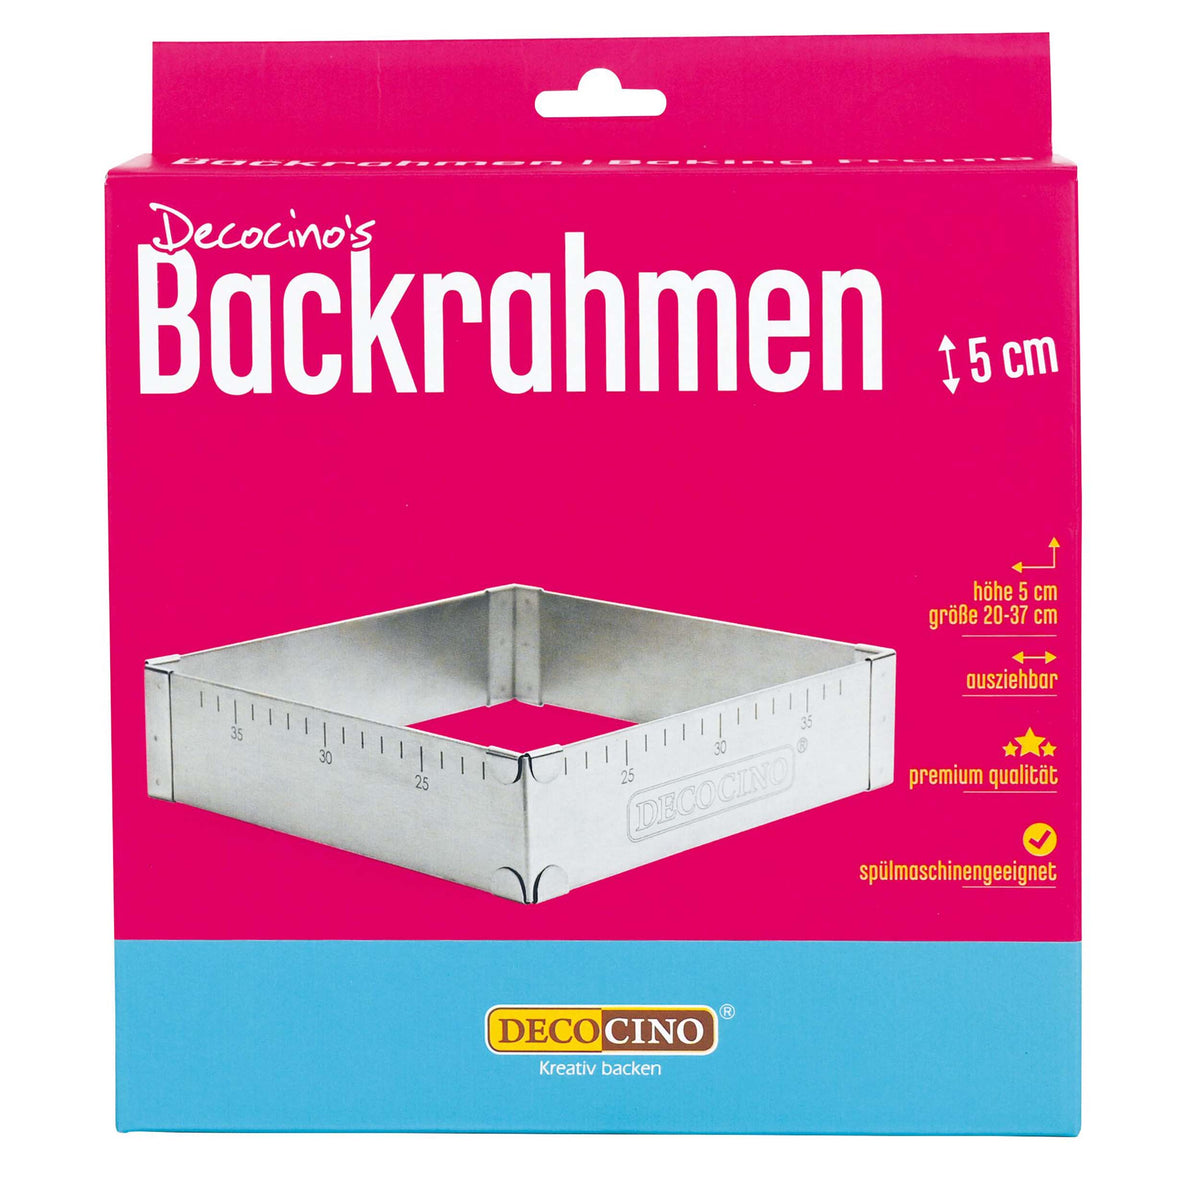 Backrahmen (5cm Höhe)